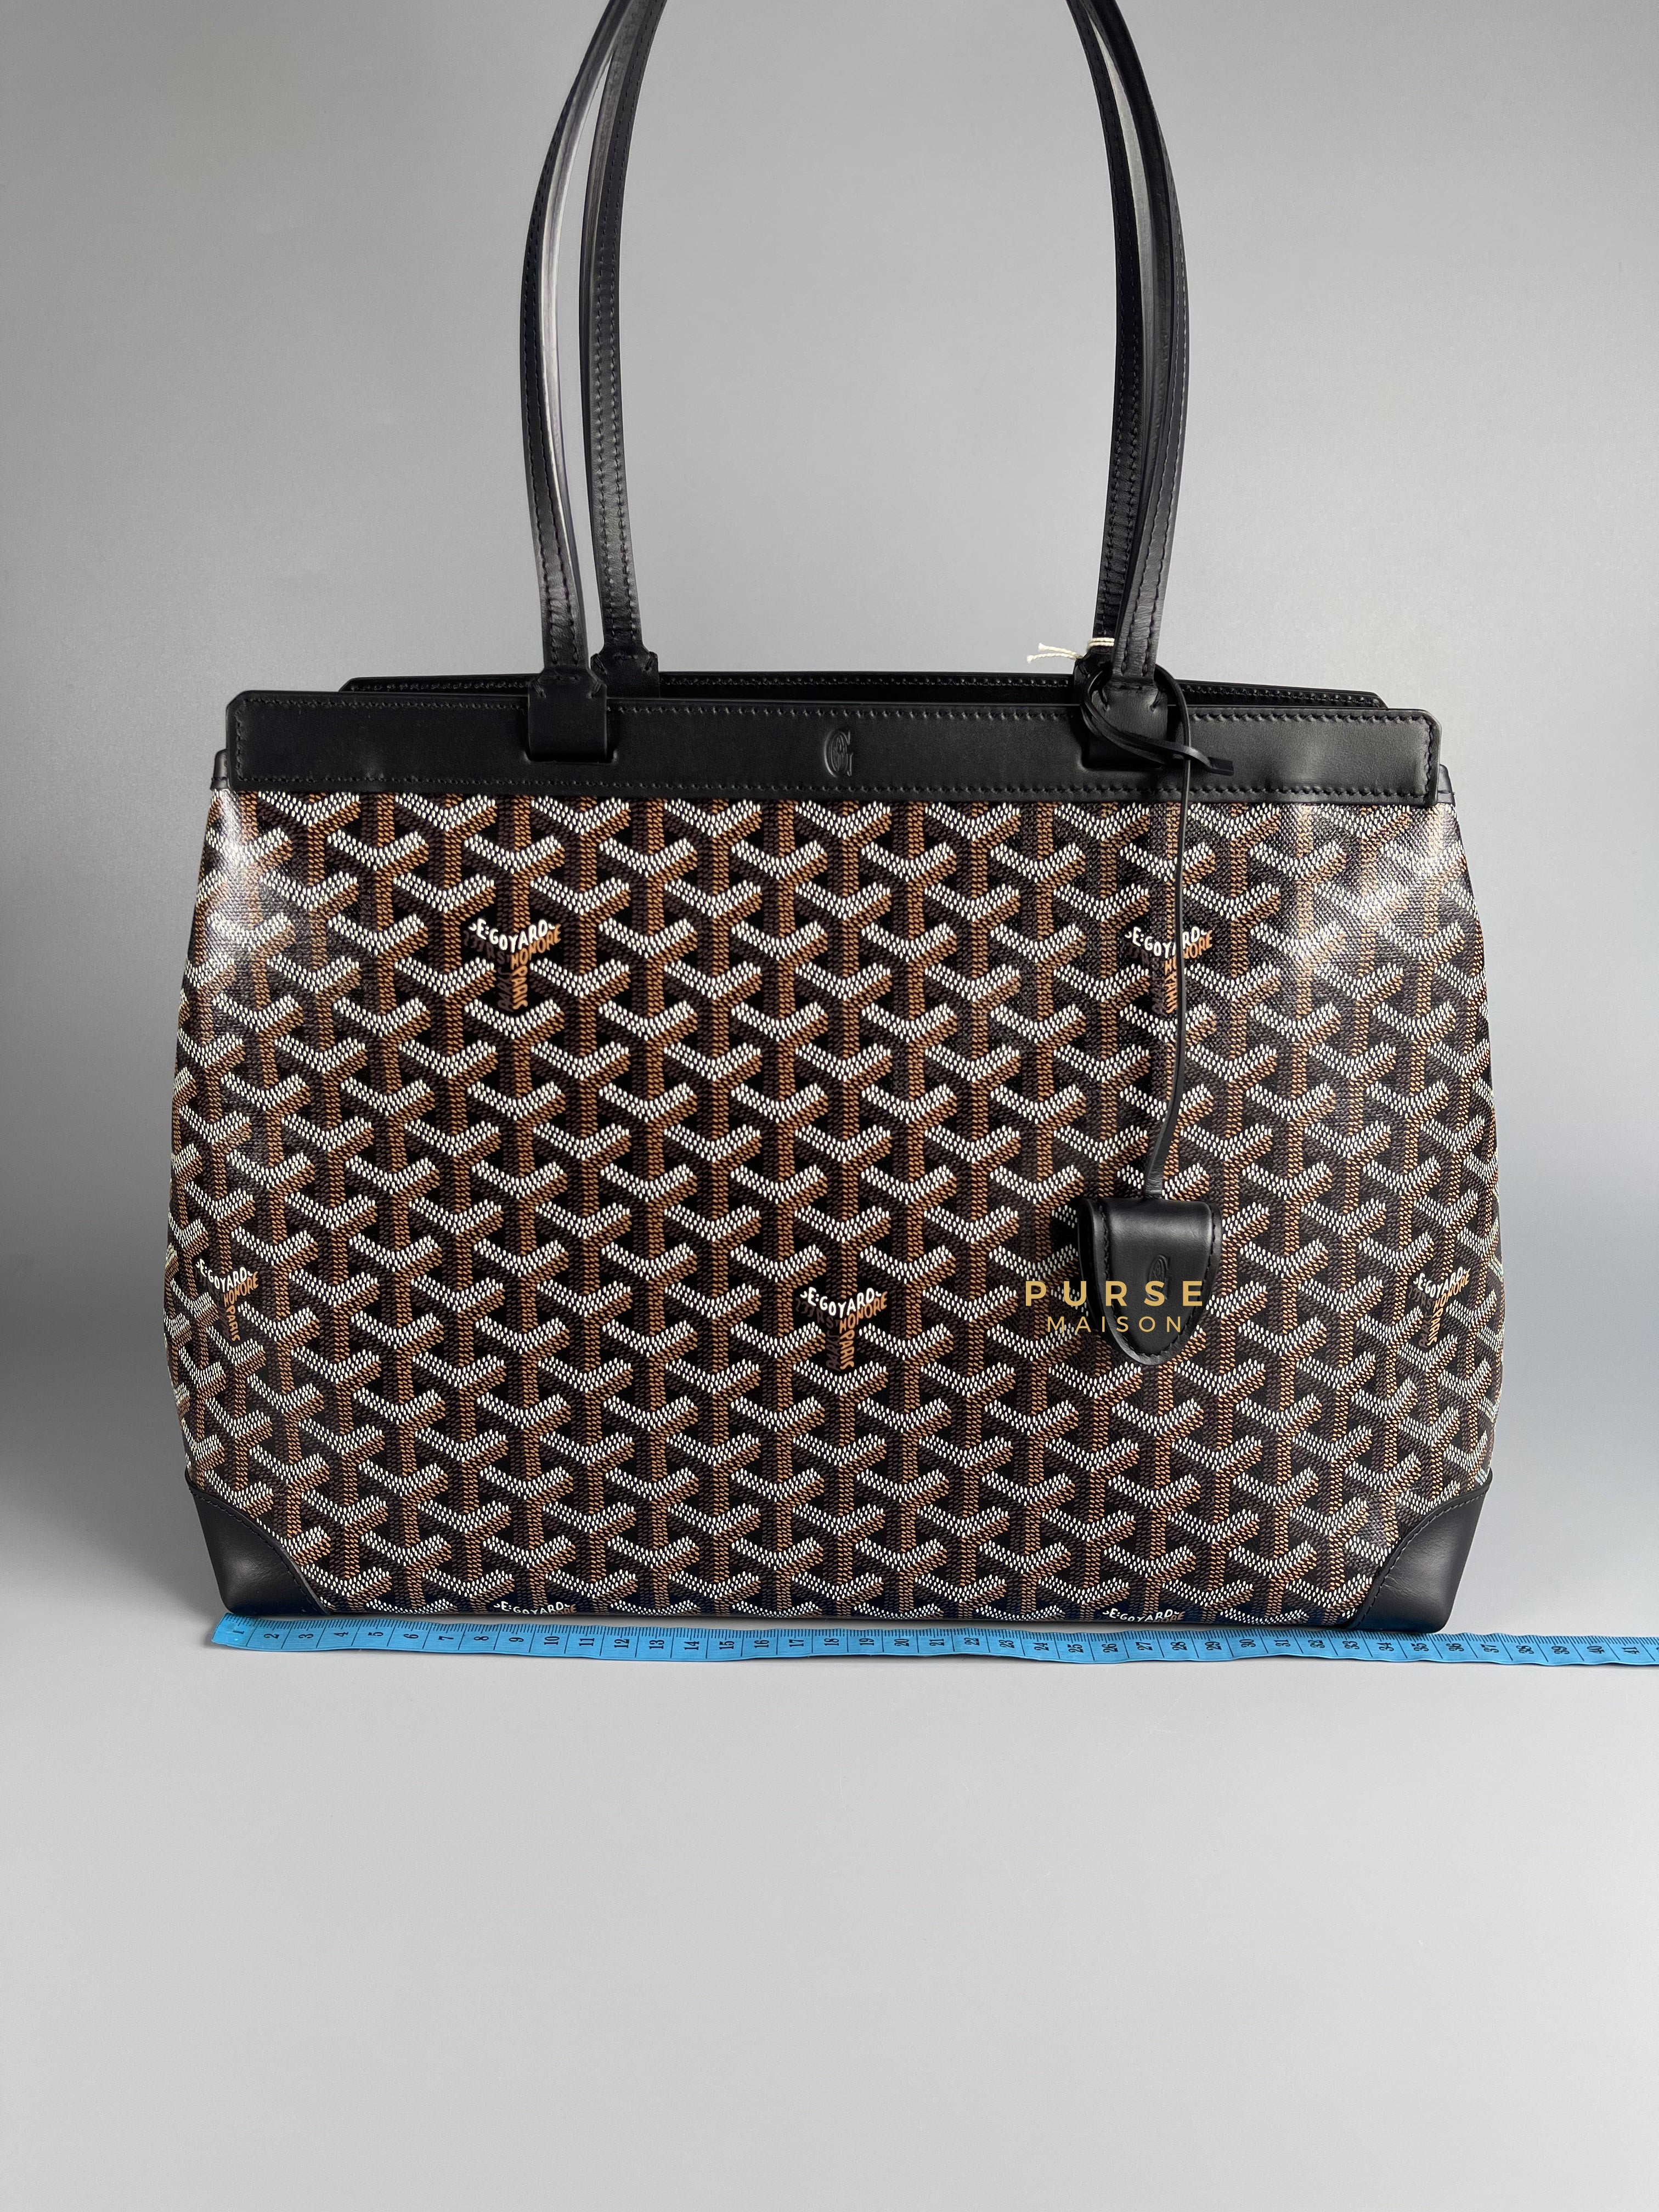 Goyard Sac Bellechasse Biaude PM Noir | Purse Maison Luxury Bags Shop